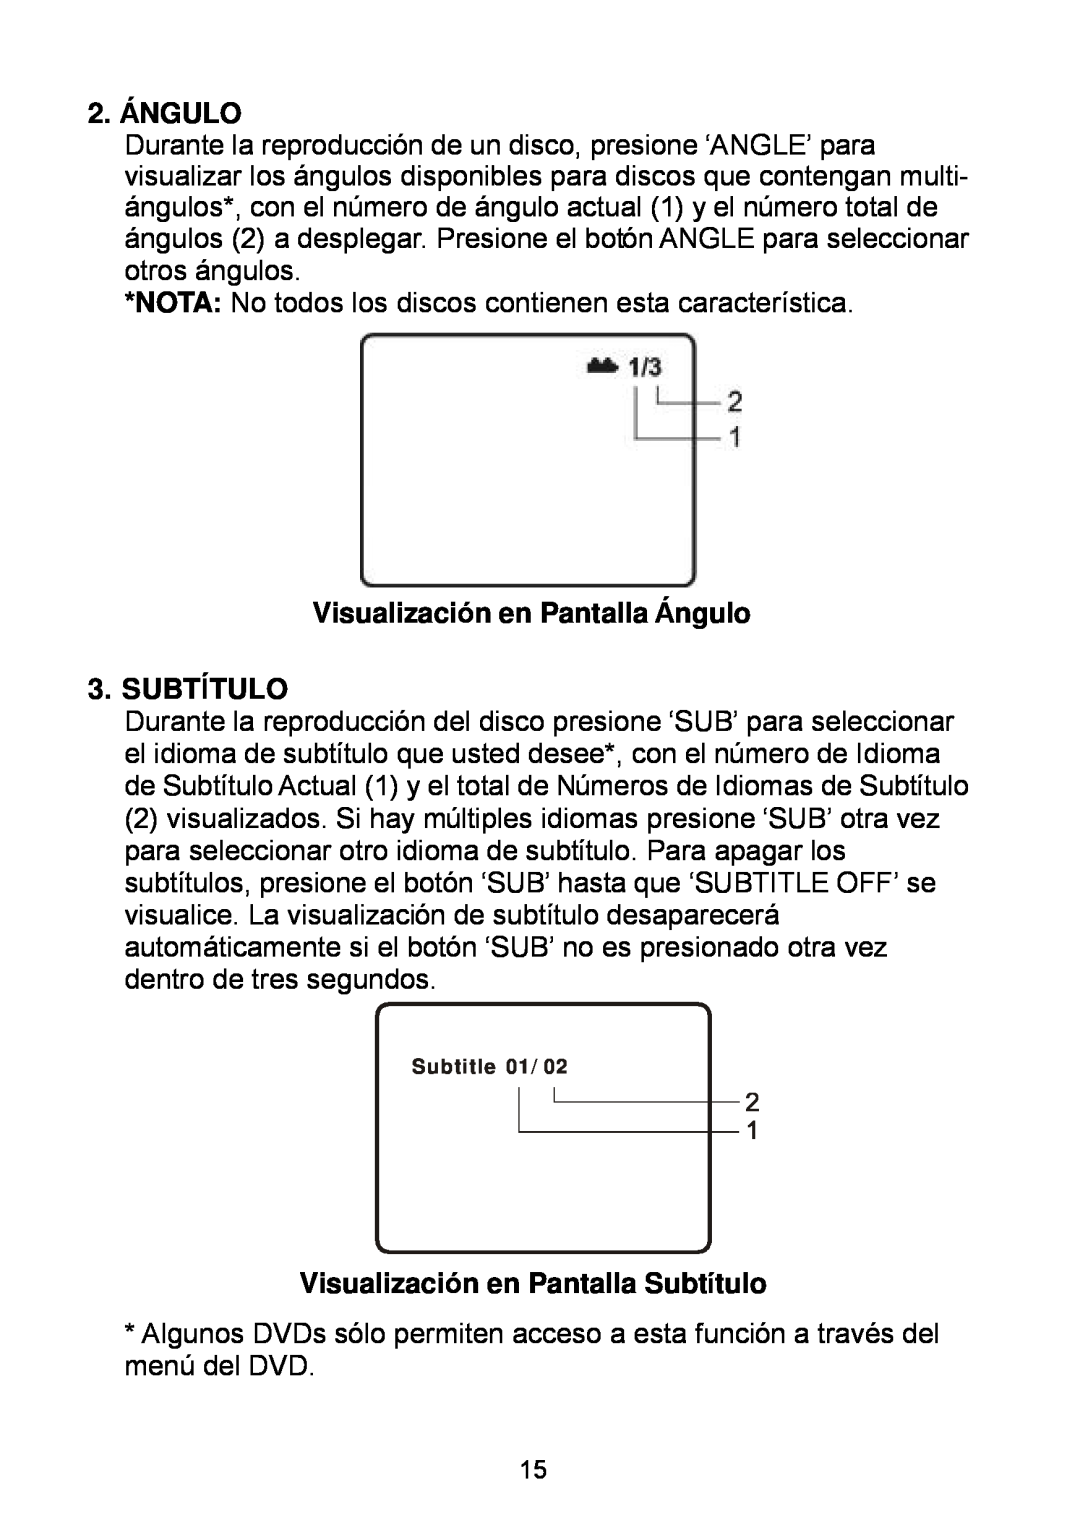 Audiovox D1929B manual 2. ÁNGULO, Visualización en Pantalla Ángulo 3. SUBTÍTULO, Visualización en Pantalla Subtítulo 